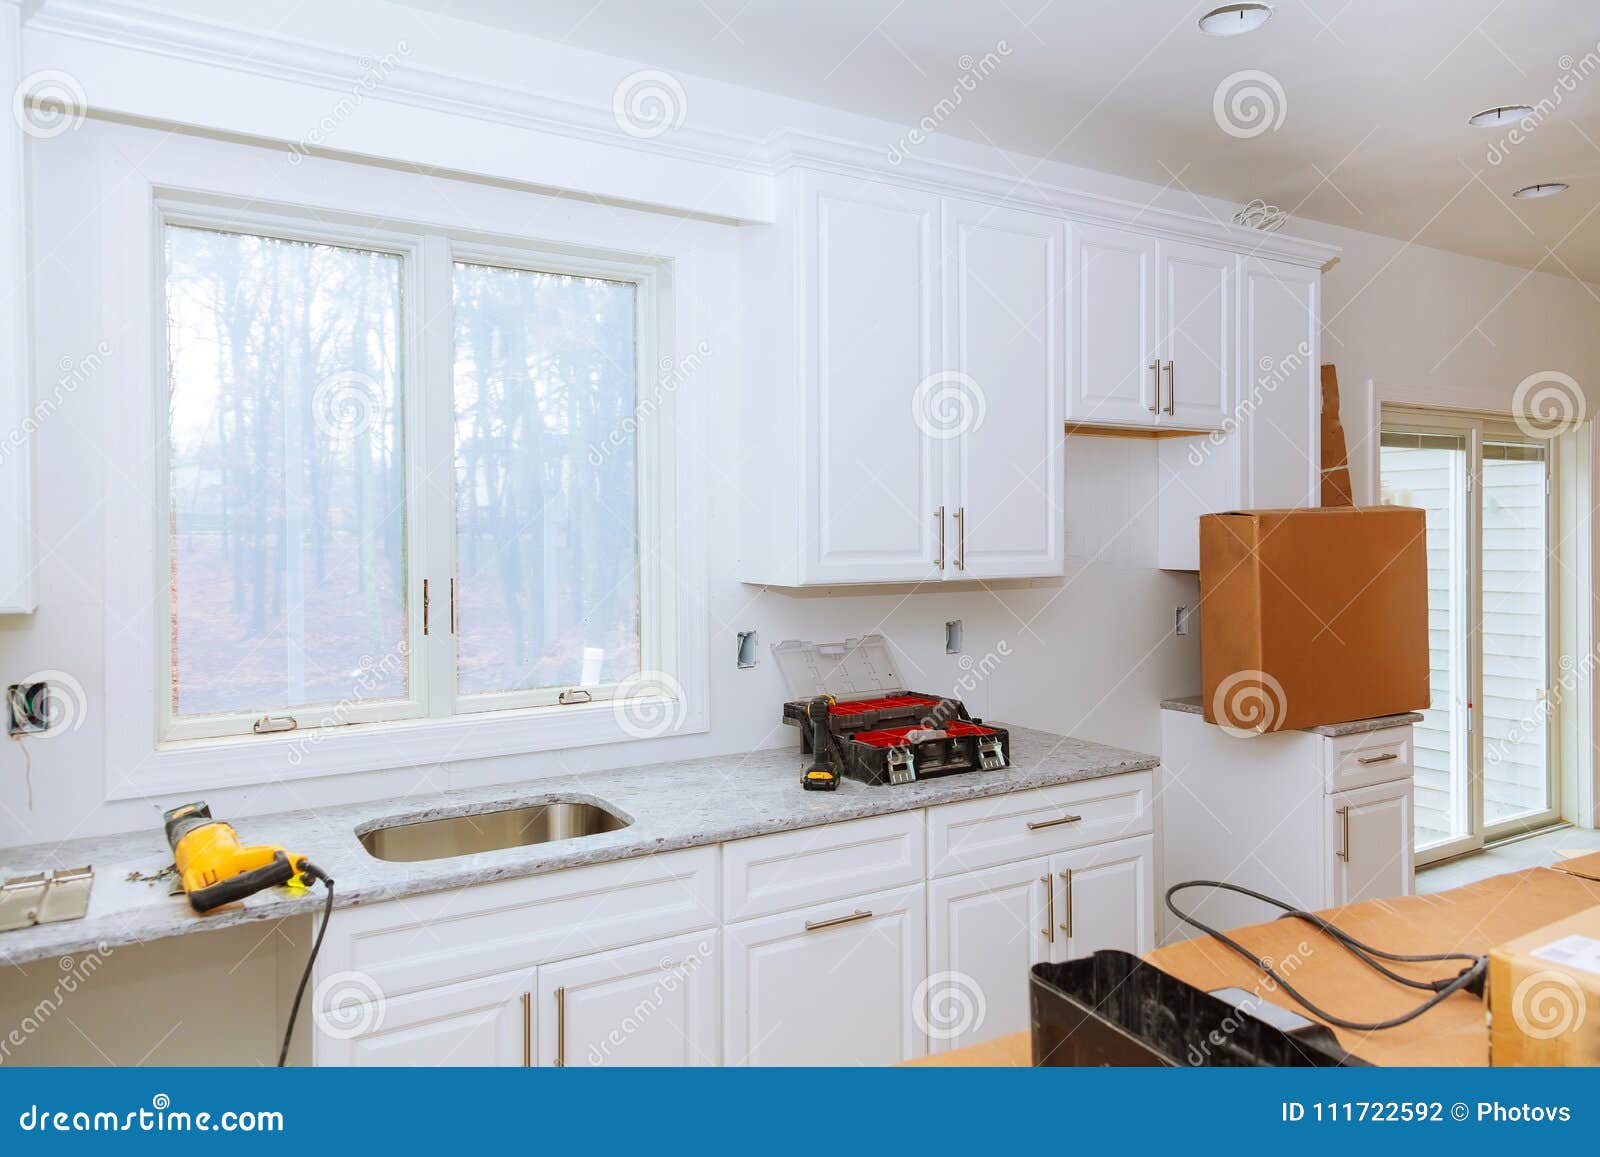 Installation Of Kitchen Installs Kitchen Cabinet Interior Design